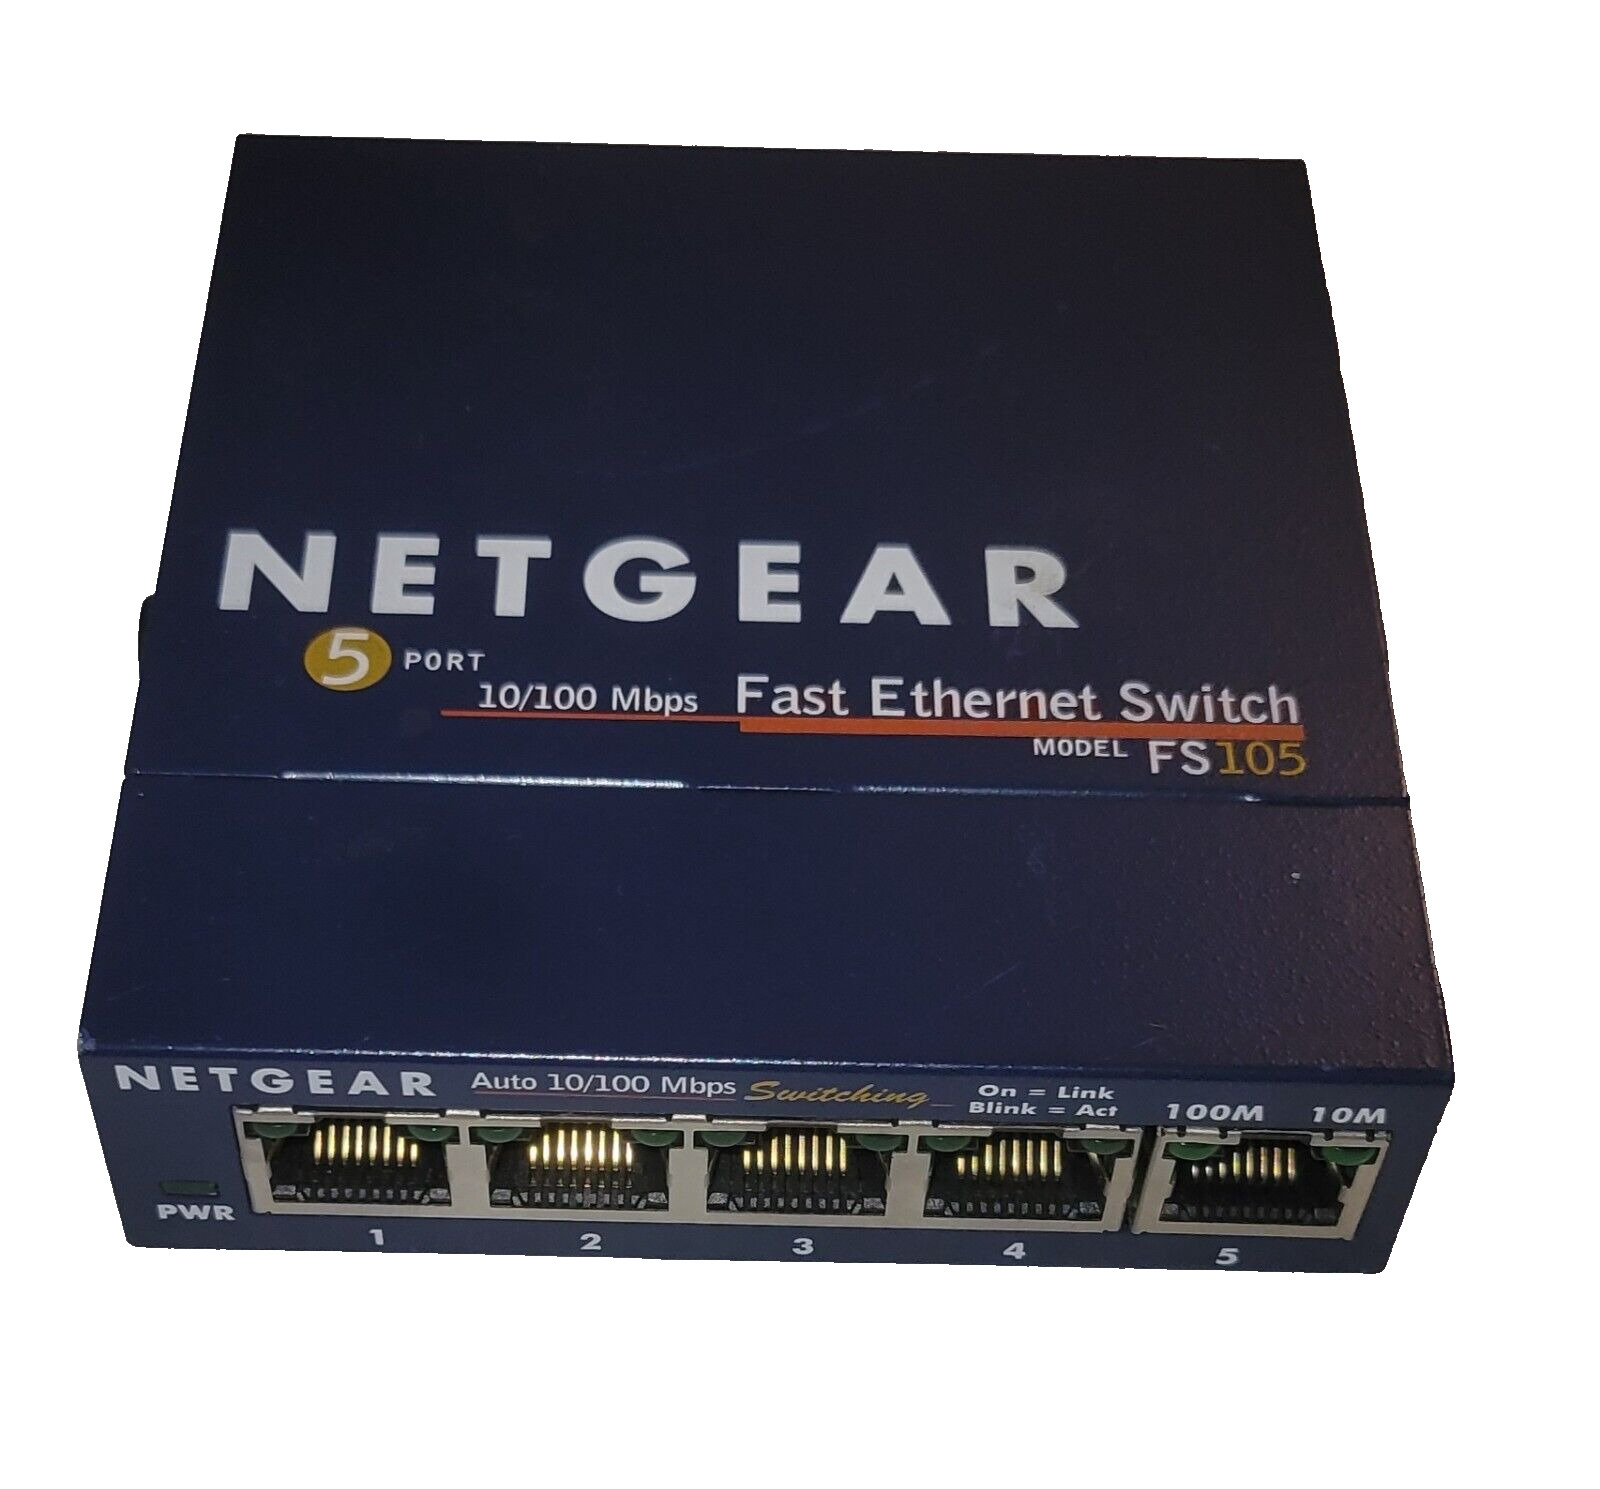 Netgear FS105 v2 Prosafe 5 Port 10/100 Fast Ethernet Switch Only NO AC ADAPTER